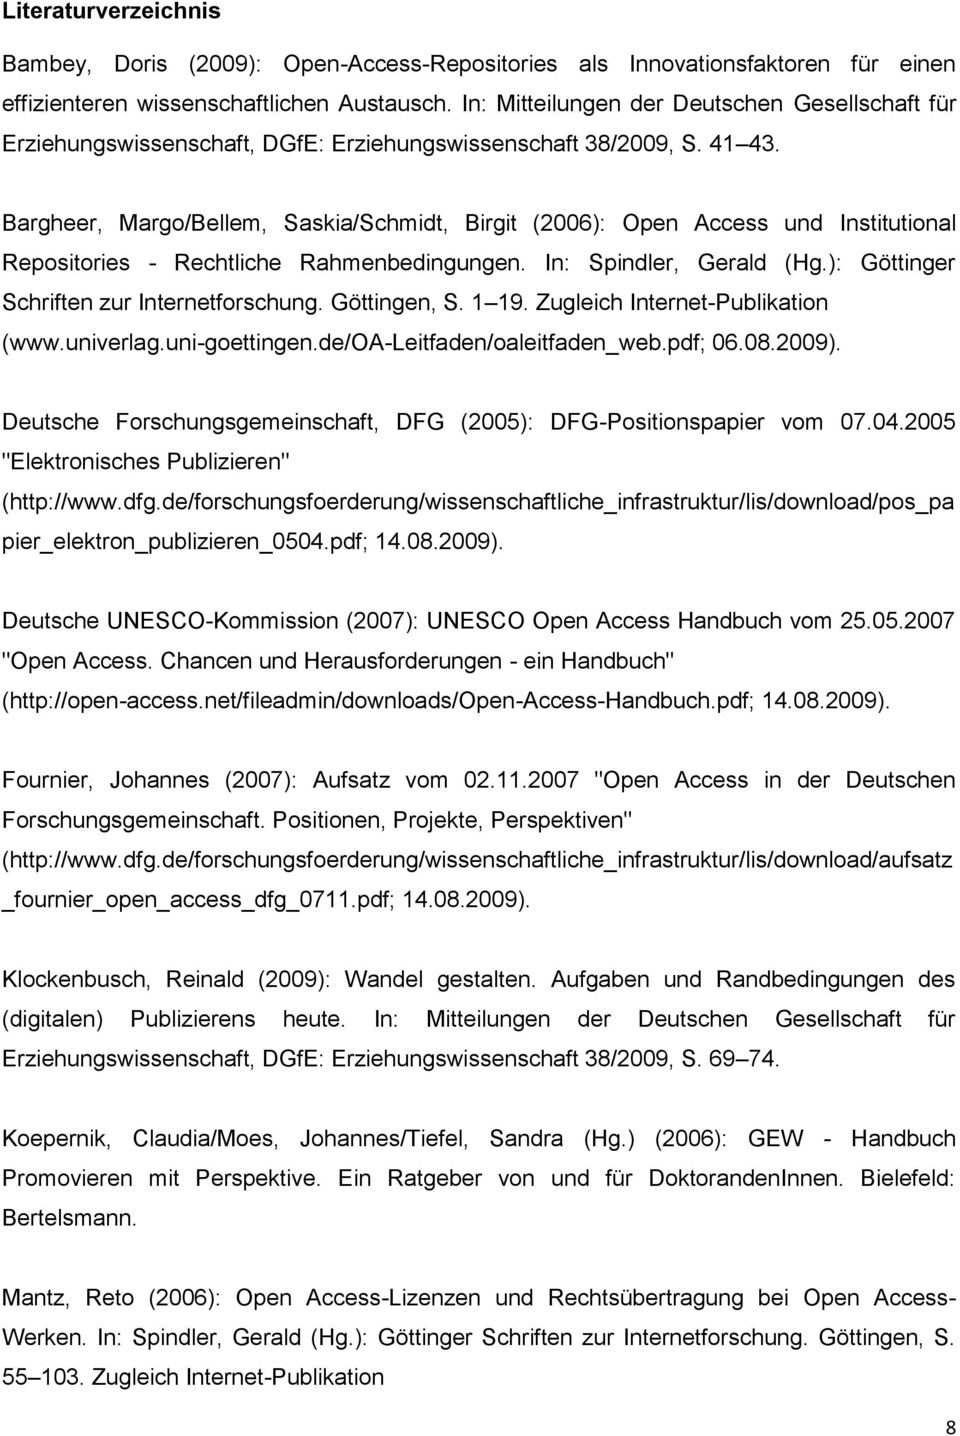 Bargheer, Margo/Bellem, Saskia/Schmidt, Birgit (2006): Open Access und Institutional Repositories - Rechtliche Rahmenbedingungen. In: Spindler, Gerald (Hg.): Göttinger Schriften zur Internetforschung.